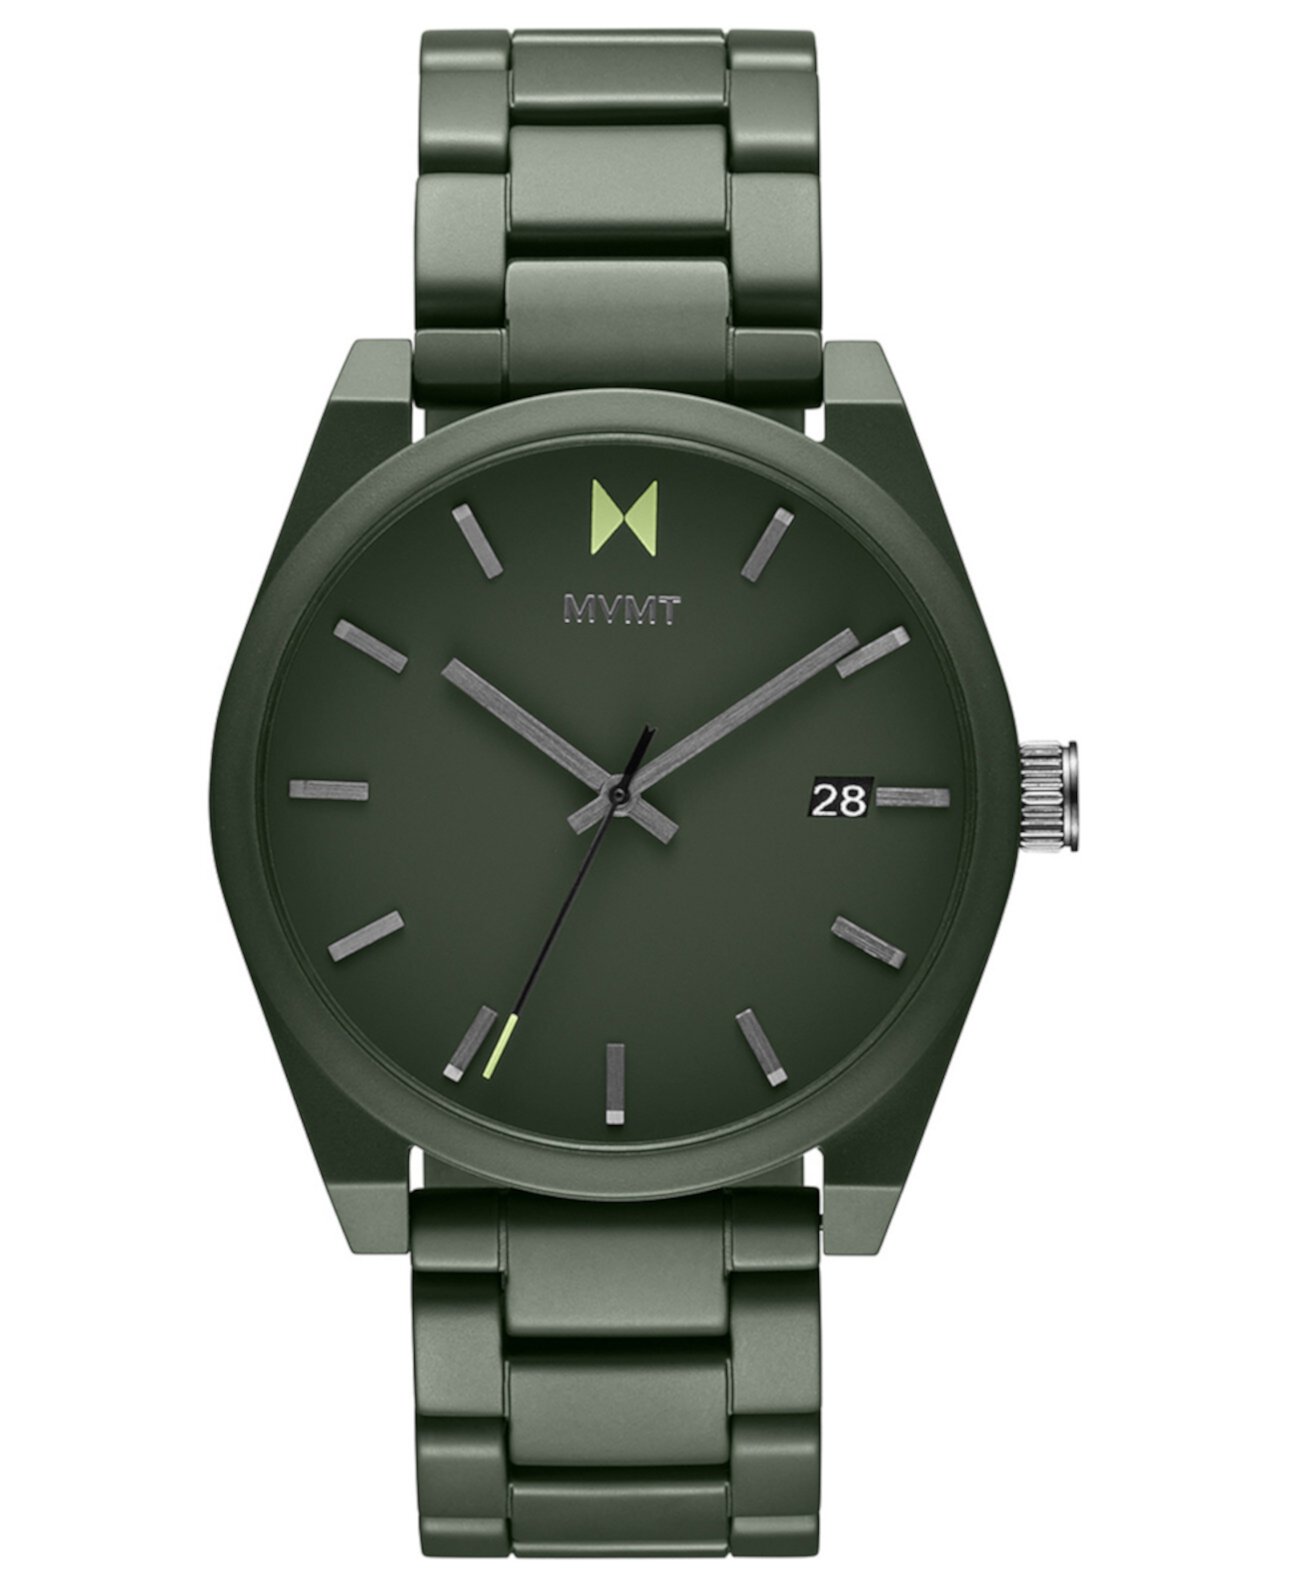 Мужские керамические матовые оливково-зеленые керамические часы-браслет Element 43 мм MVMT